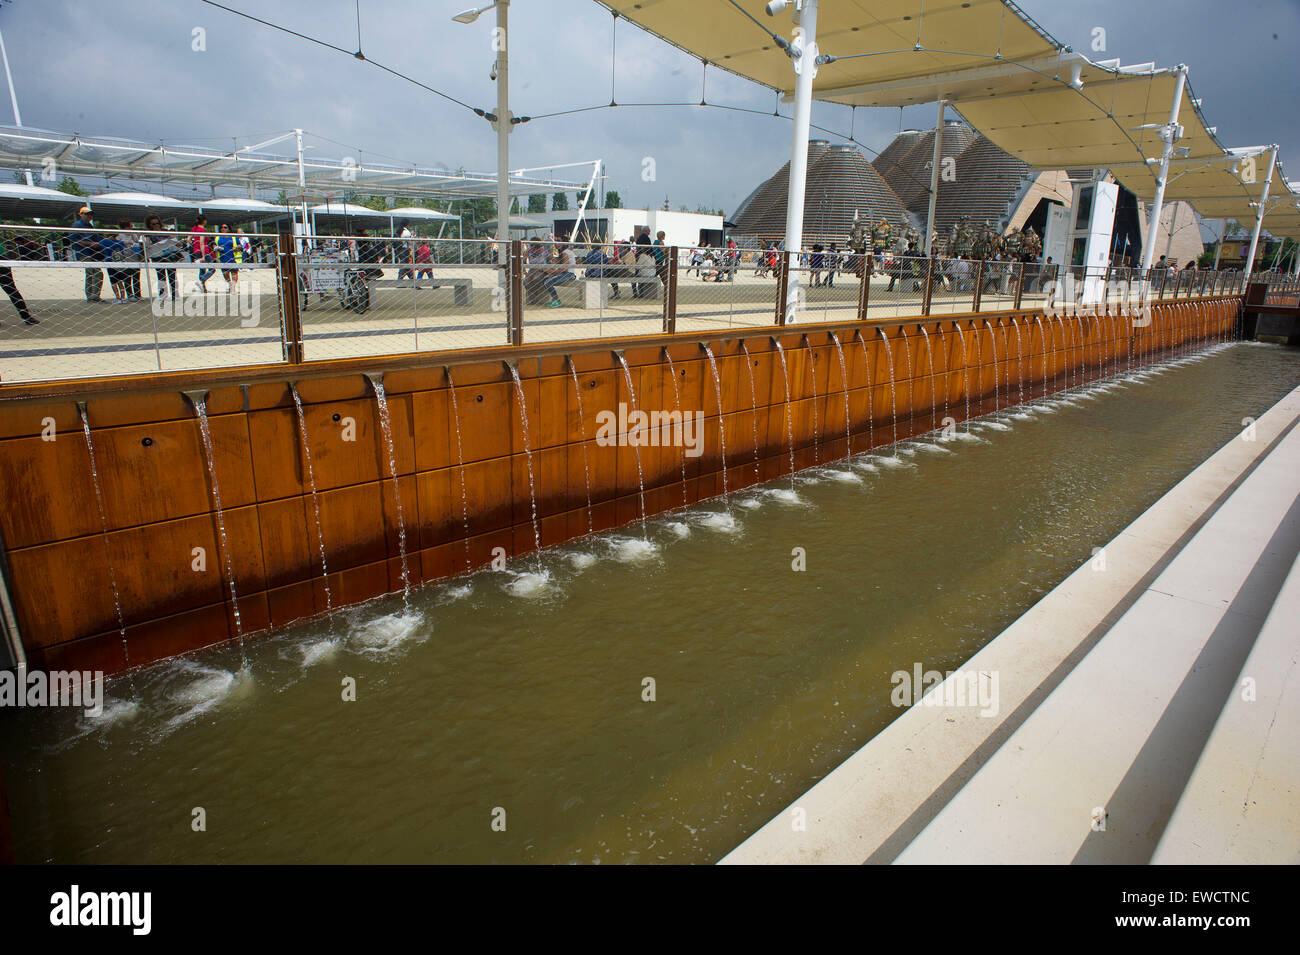 Italia - Milán - Expo 2015 - fuentes de aguas continentales Foto de stock